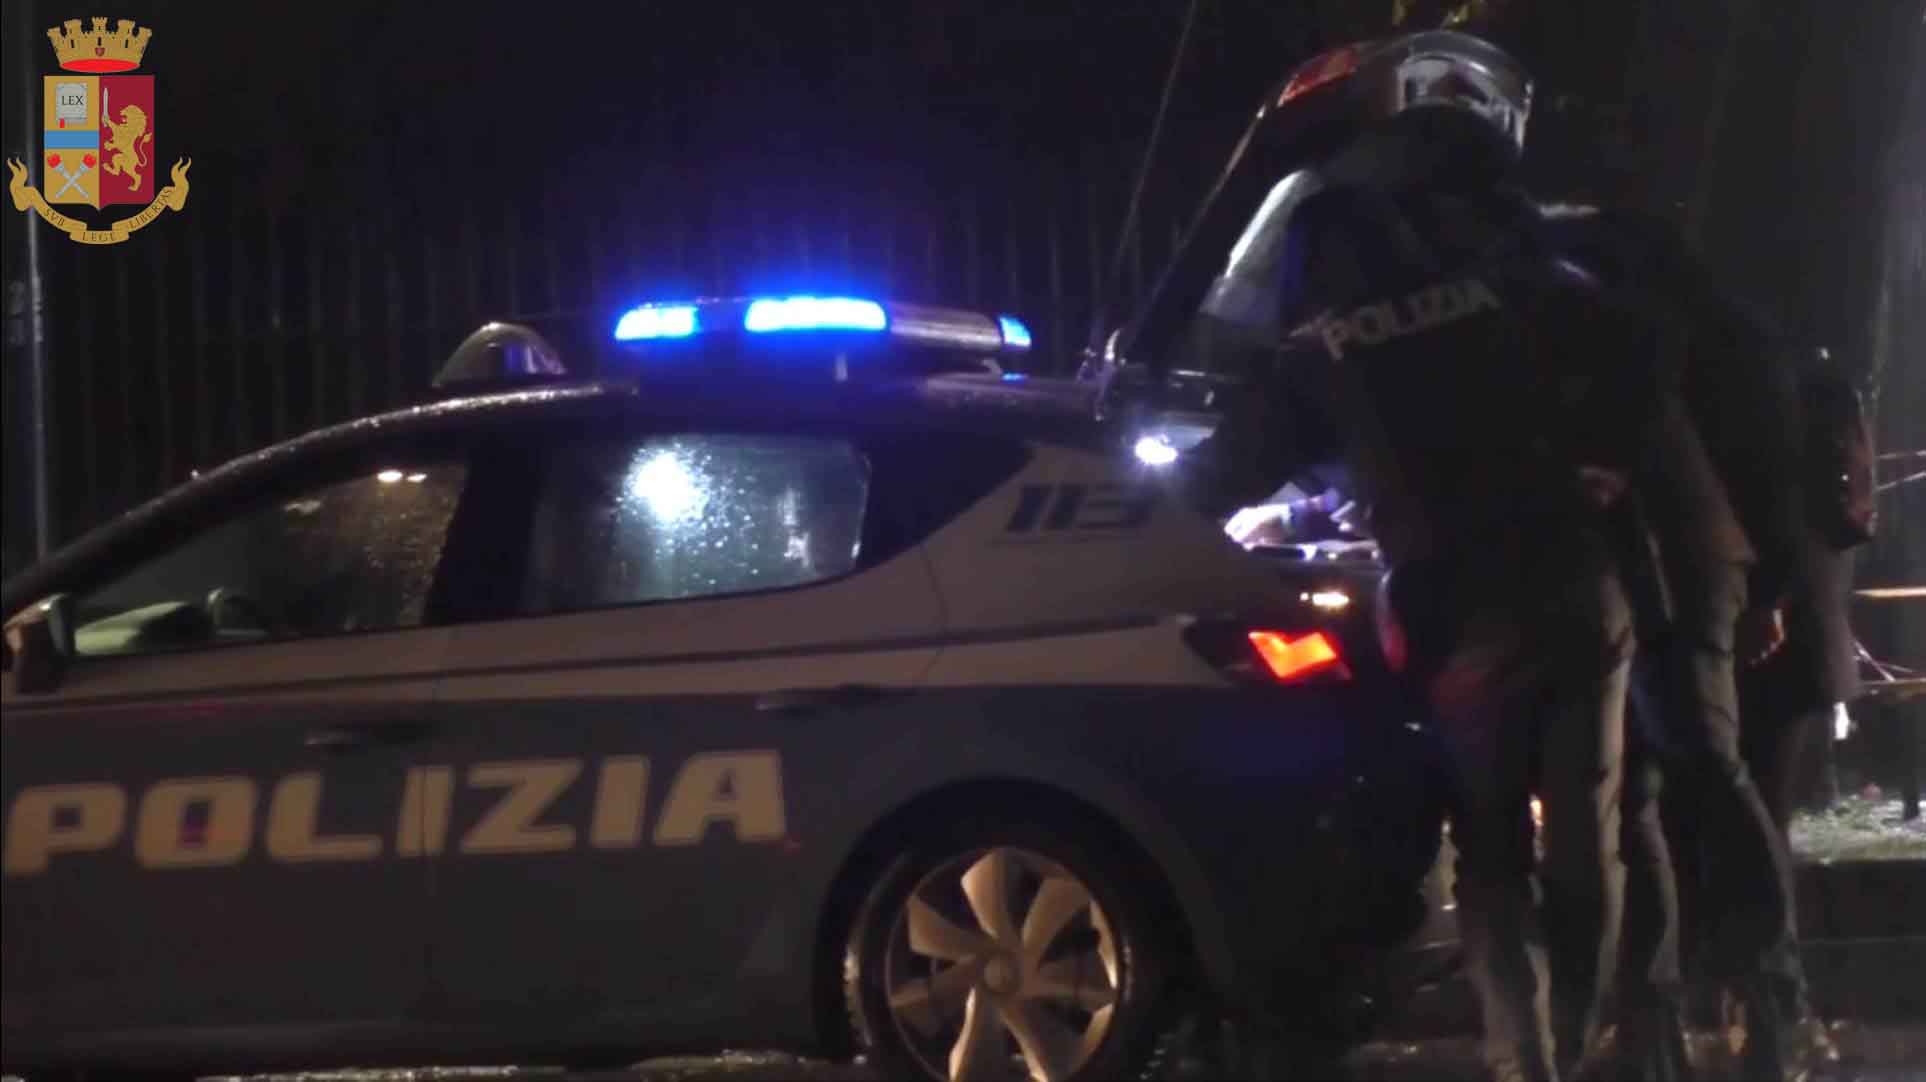 Milano, servizio straordinario di controllo del territorio della Polizia di Stato nella zona adiacente alla Triennale.